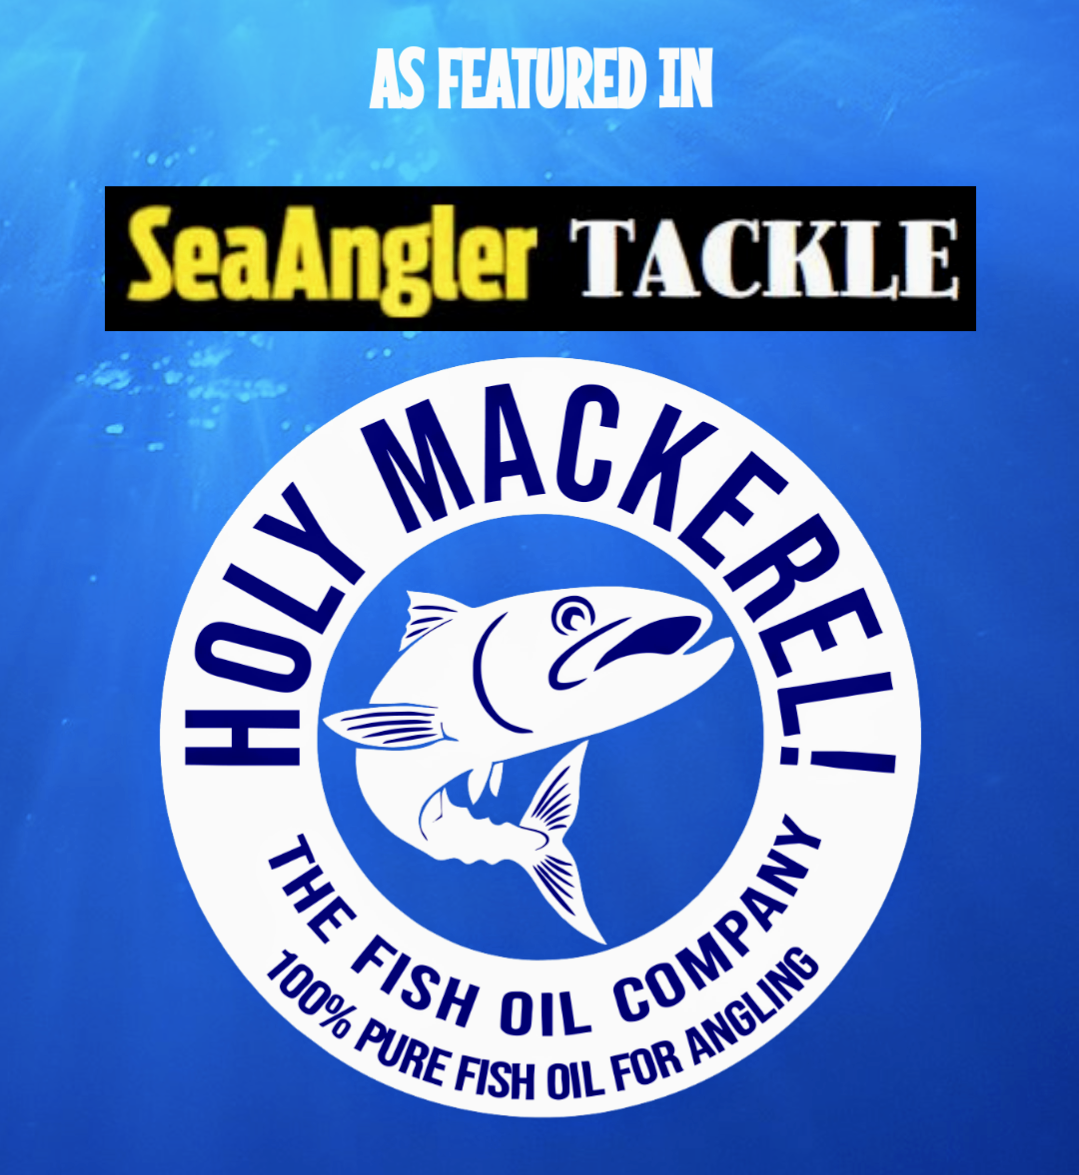 Holy Mackerel Fish Oil For Angling - North Atlantic Fishing NI